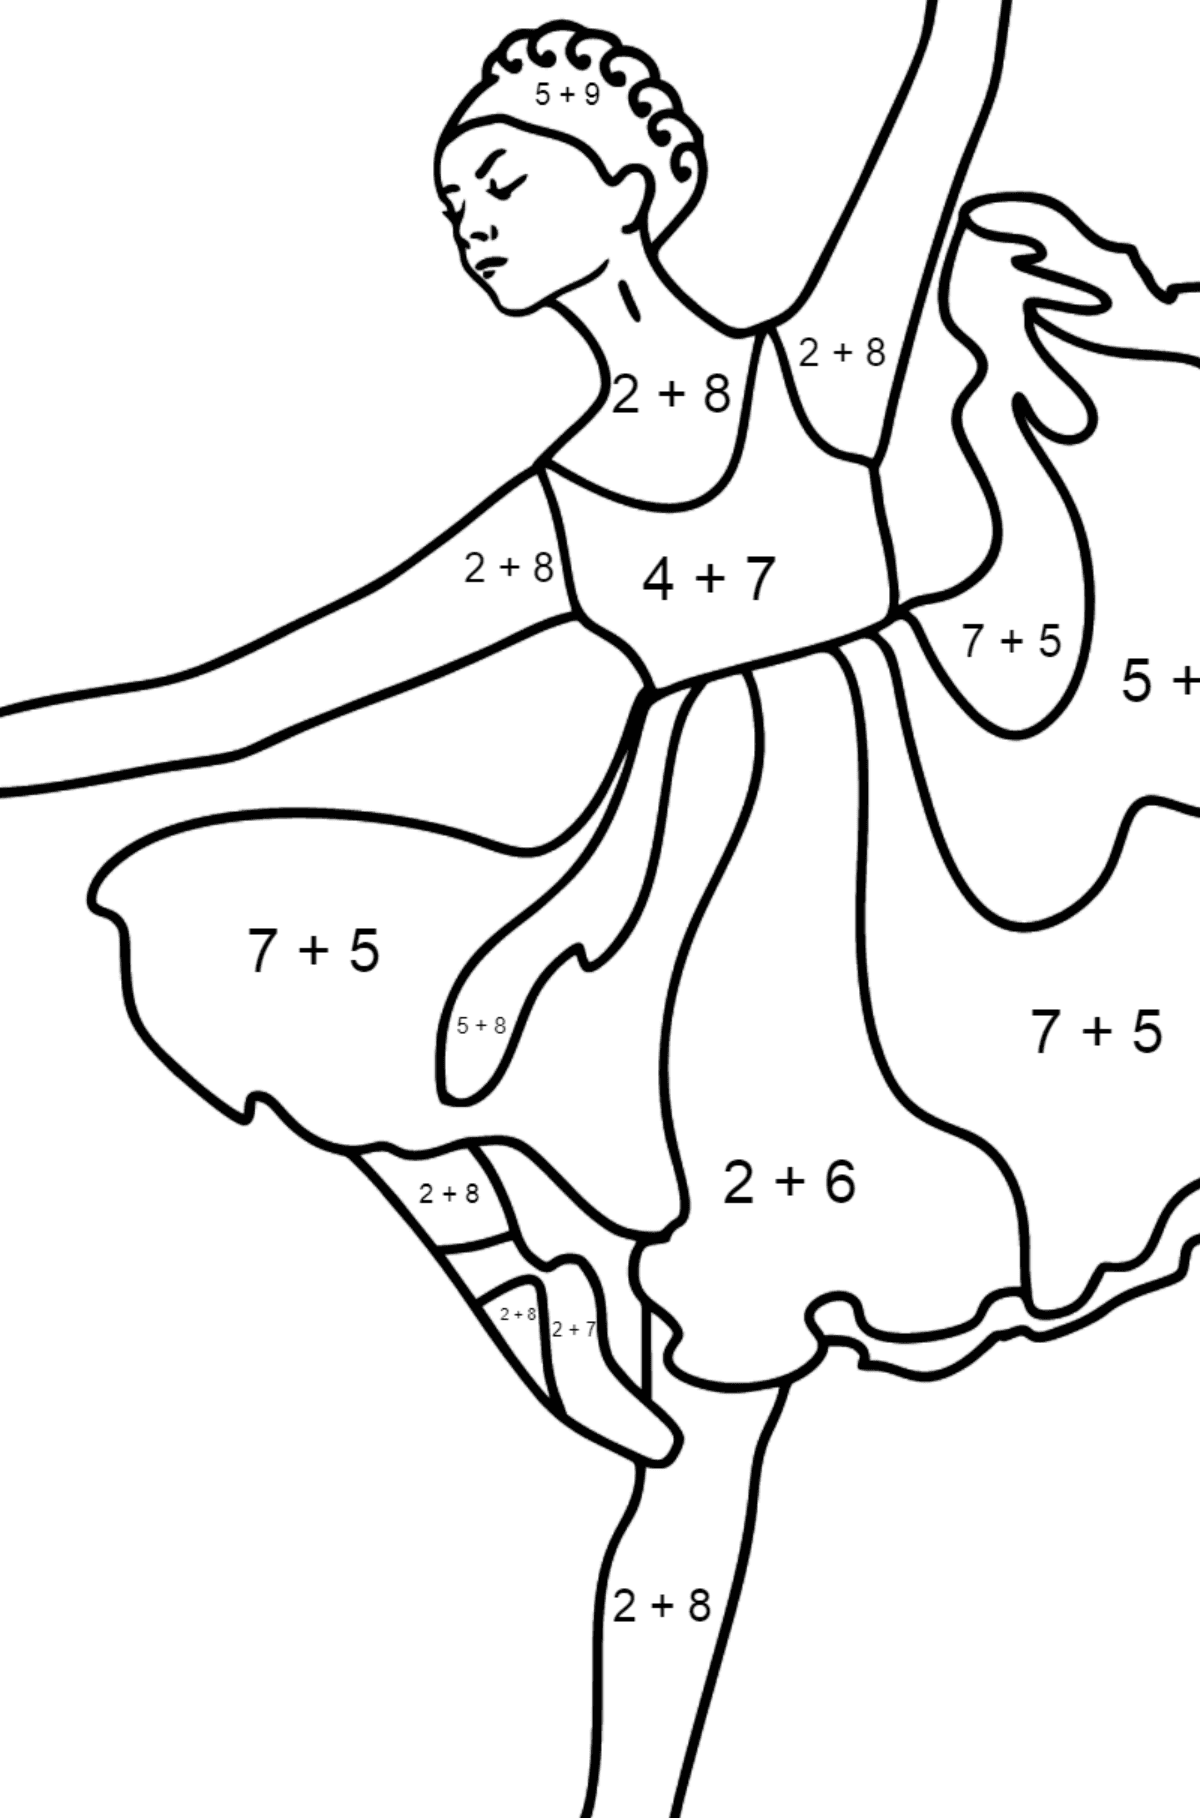 Ballerina i lilla kjole tegning til fargelegging - Matematisk fargeleggingsside - addisjon for barn